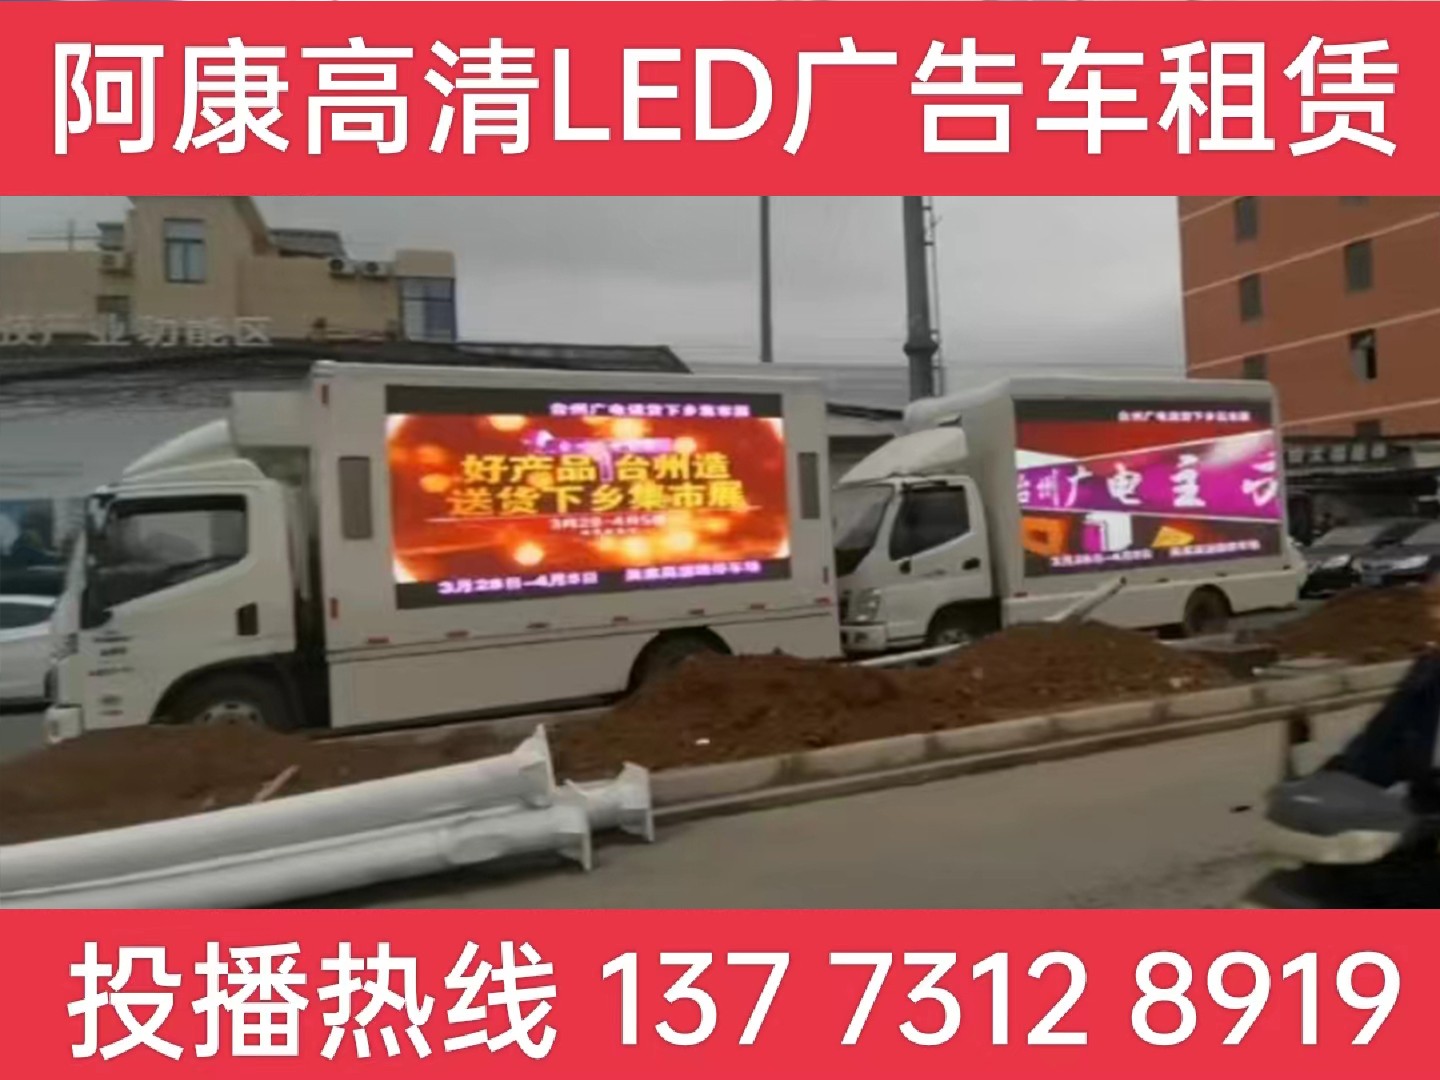 高邮LED宣传车租赁